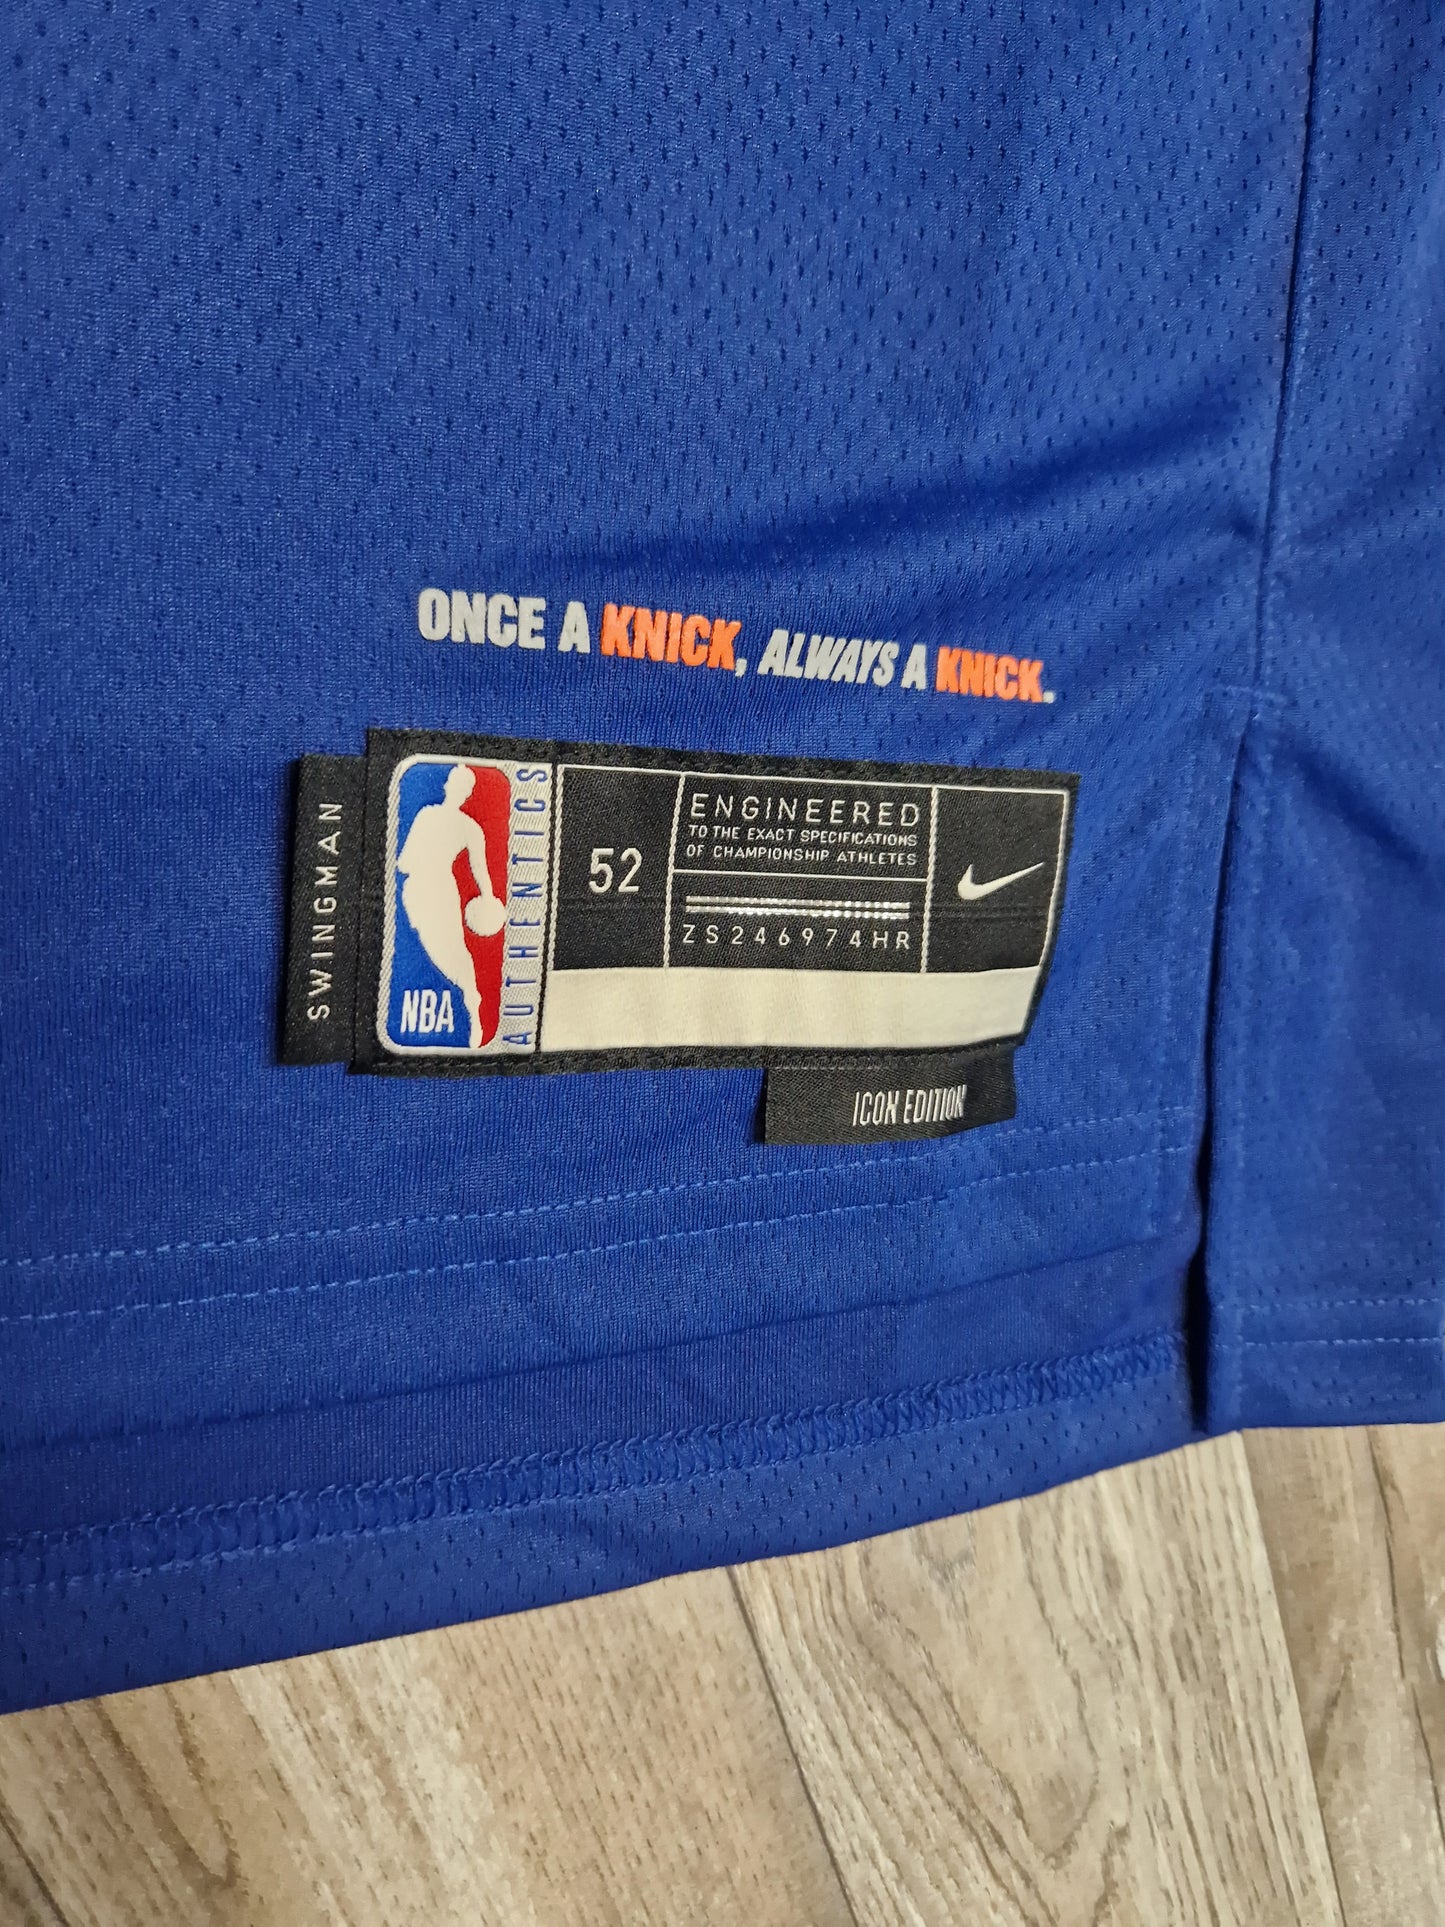 Jalen Brunsen New York Knicks Jersey Size XL